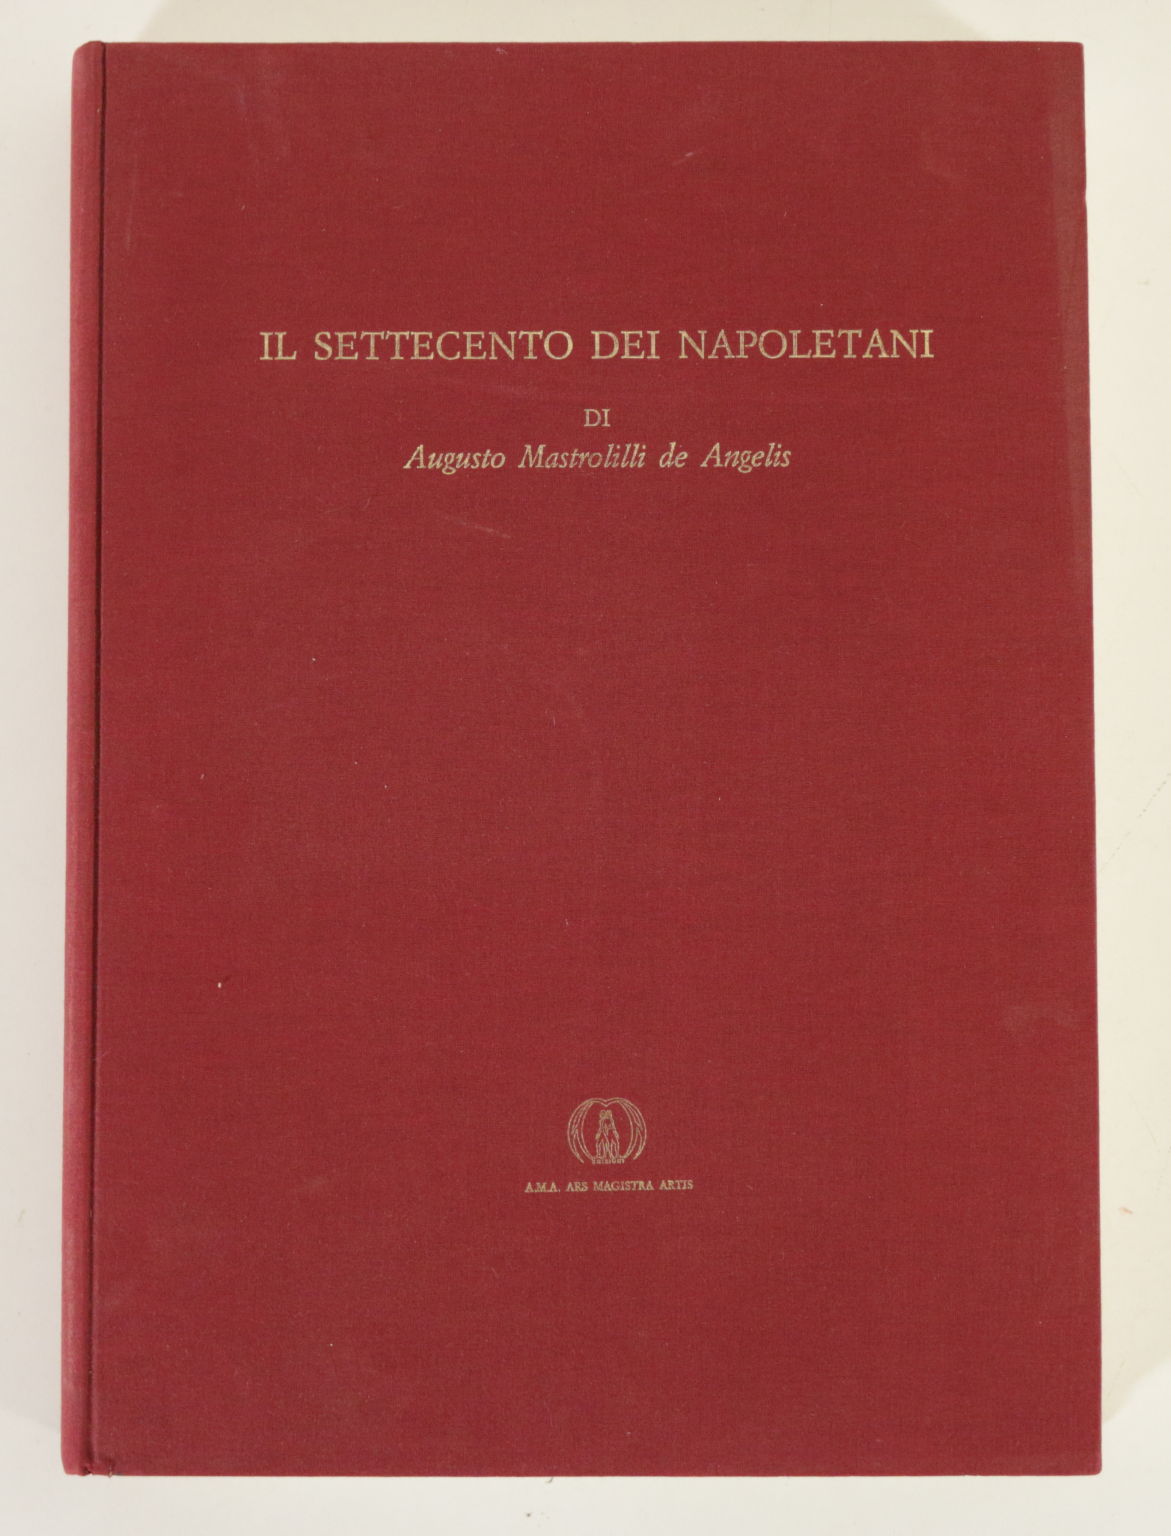 Il settecento dei napoletani di Augusto Mastrolill, Angelo Calabrese